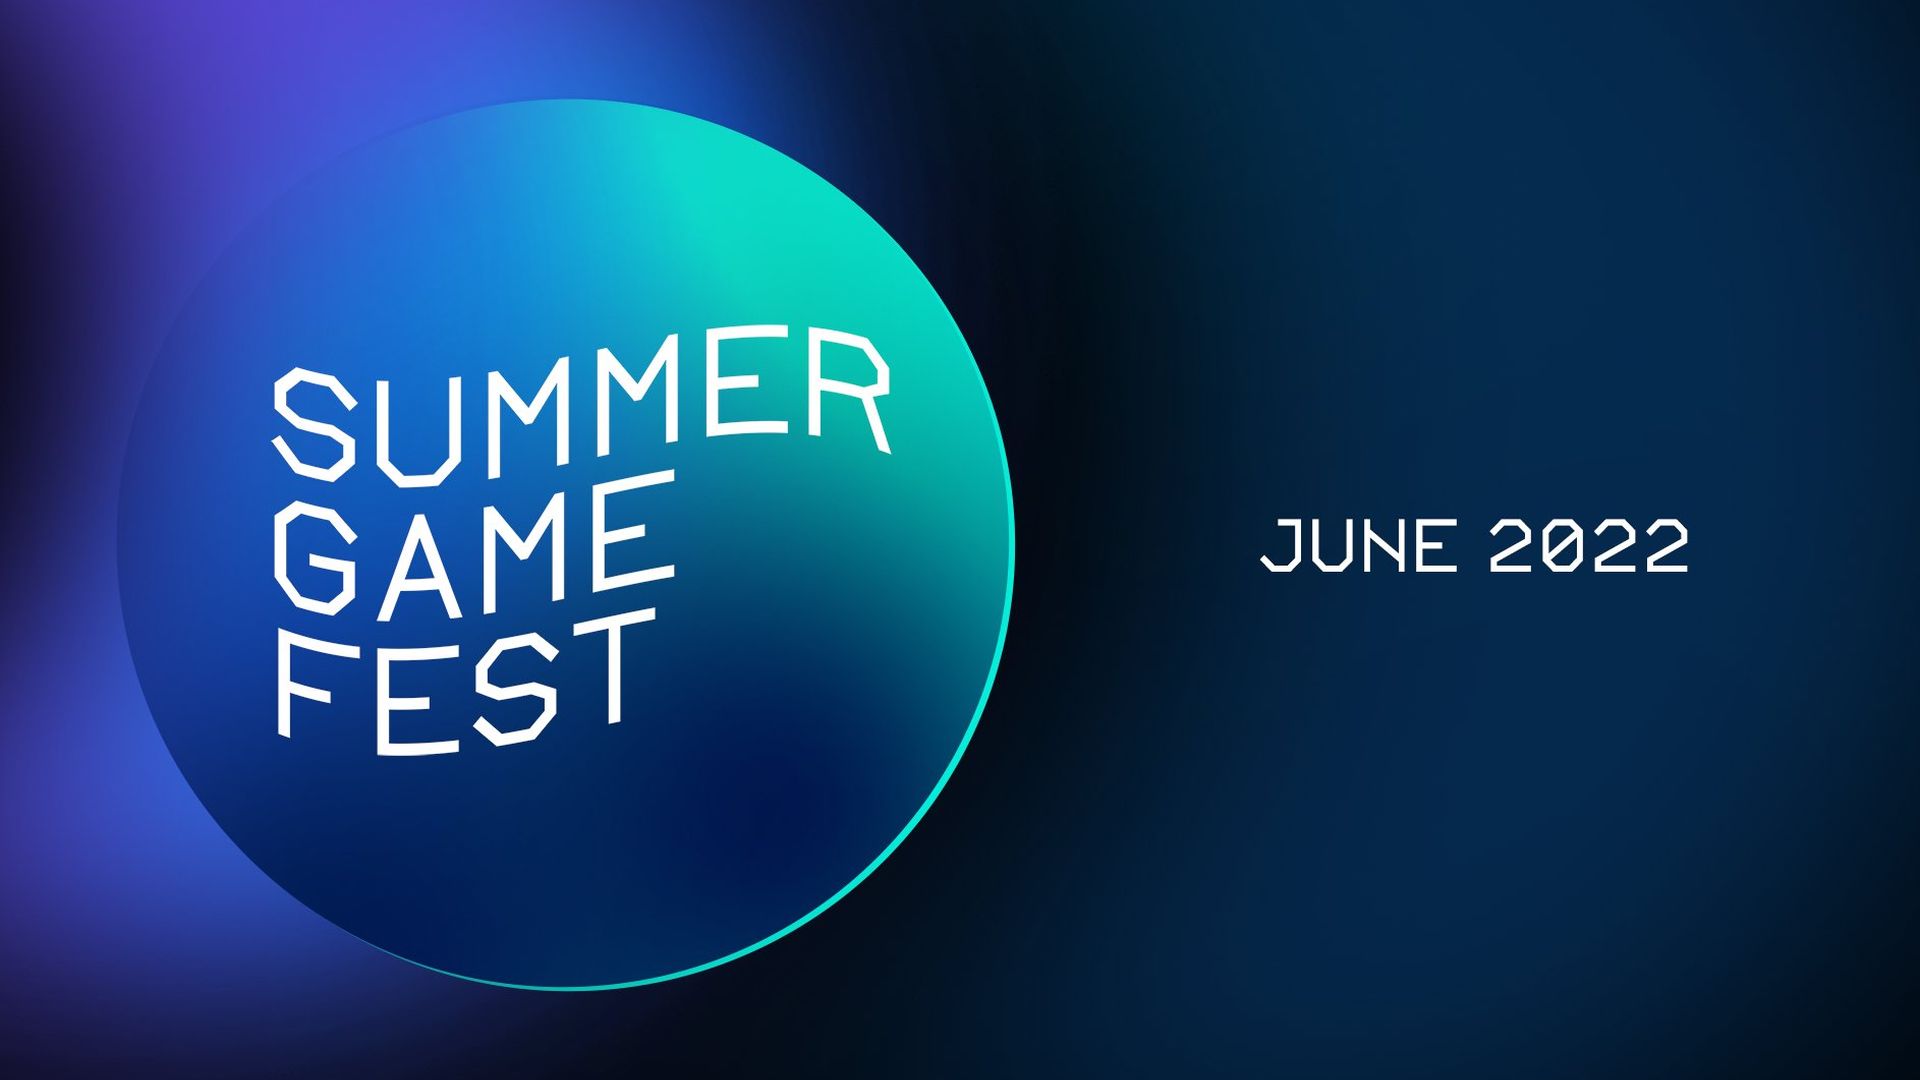 Summer Game Fest Kickoff Live Confirmed for June